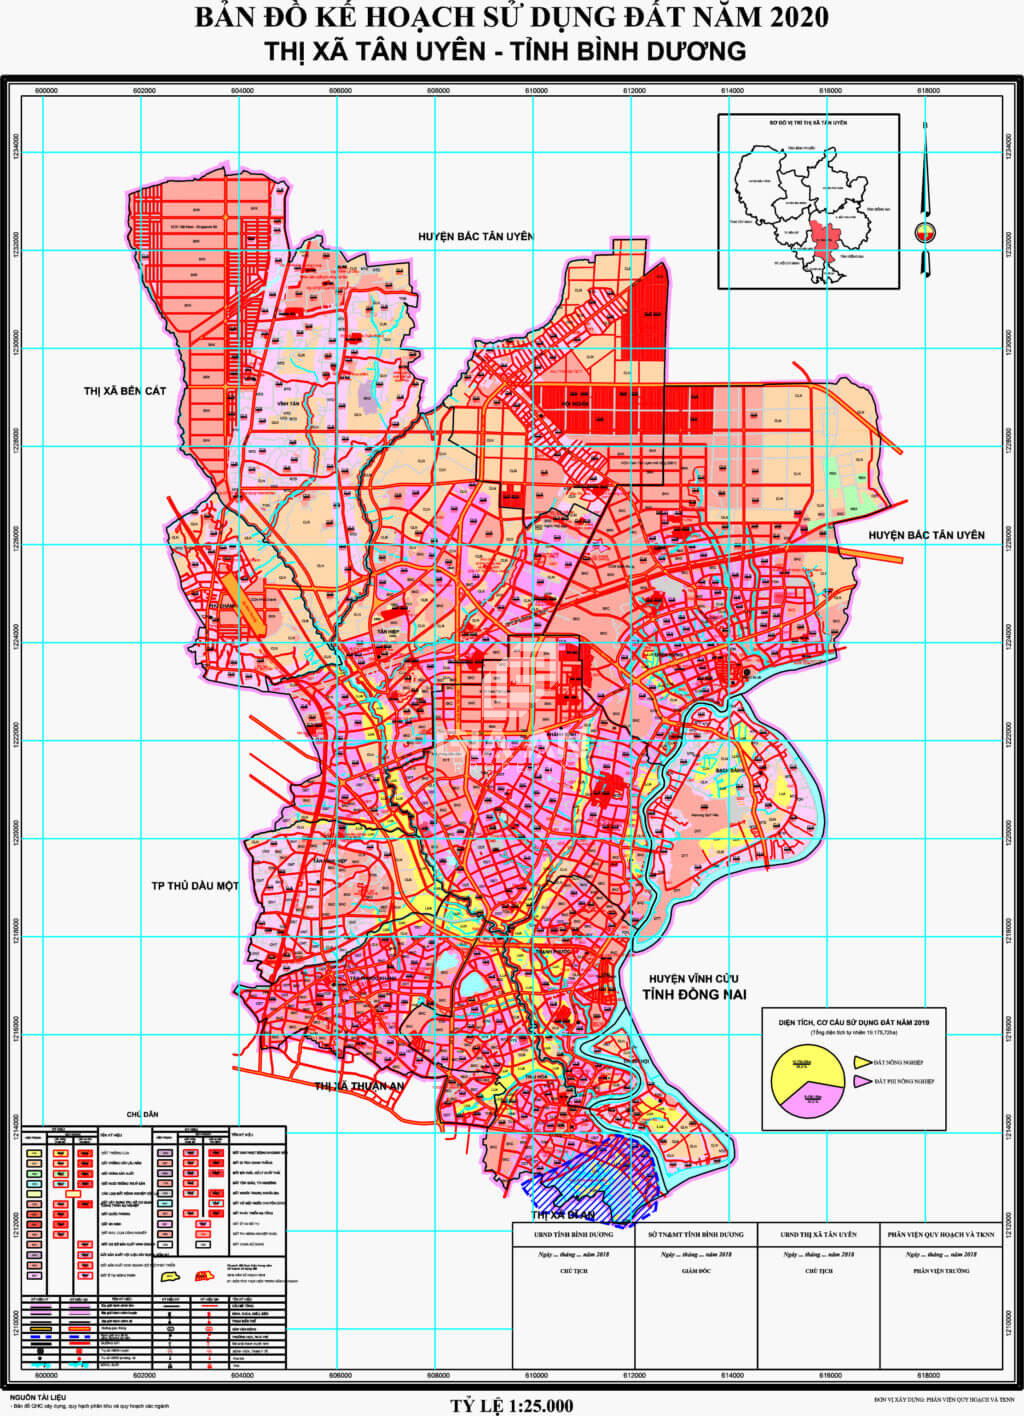 Bản đồ quy hoạch sử dụng đất thị xã Tân Uyên